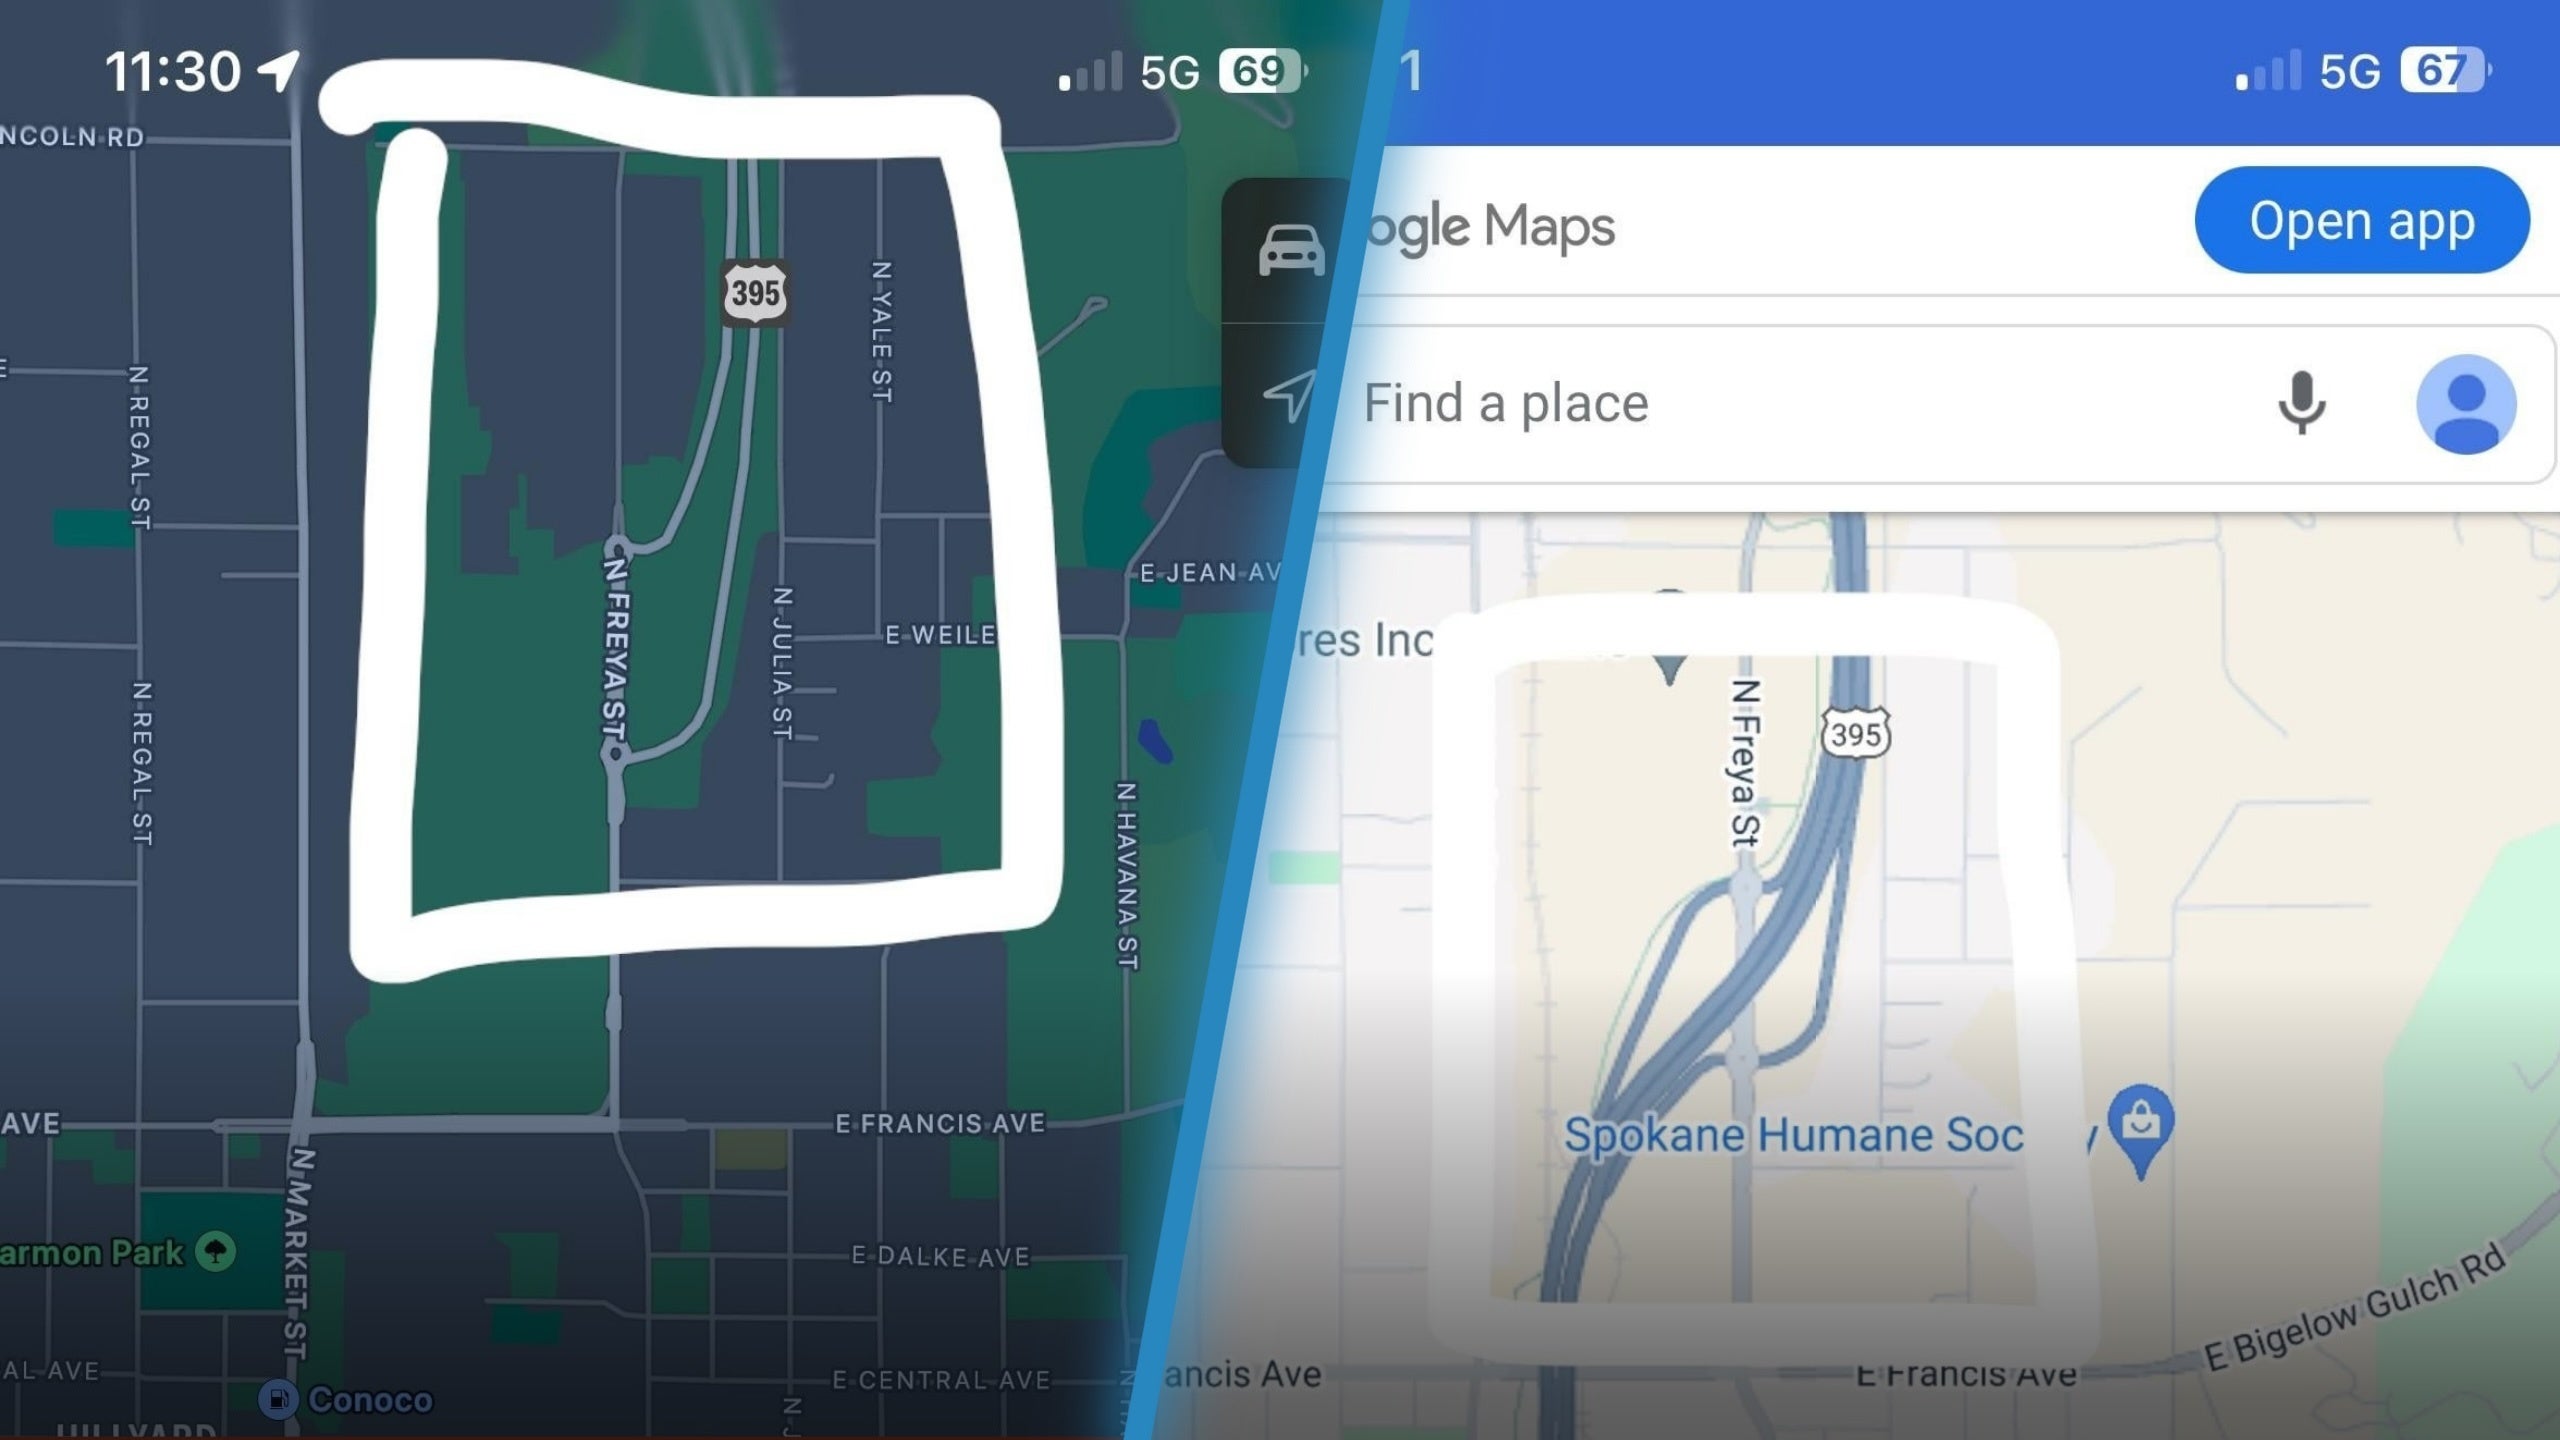 O Apple Maps (L) não conseguiu incluir uma nova estrada que foi incluída (R) no Google Maps - Há uma grande falha que o Apple Maps deve corrigir para competir com o Google Maps